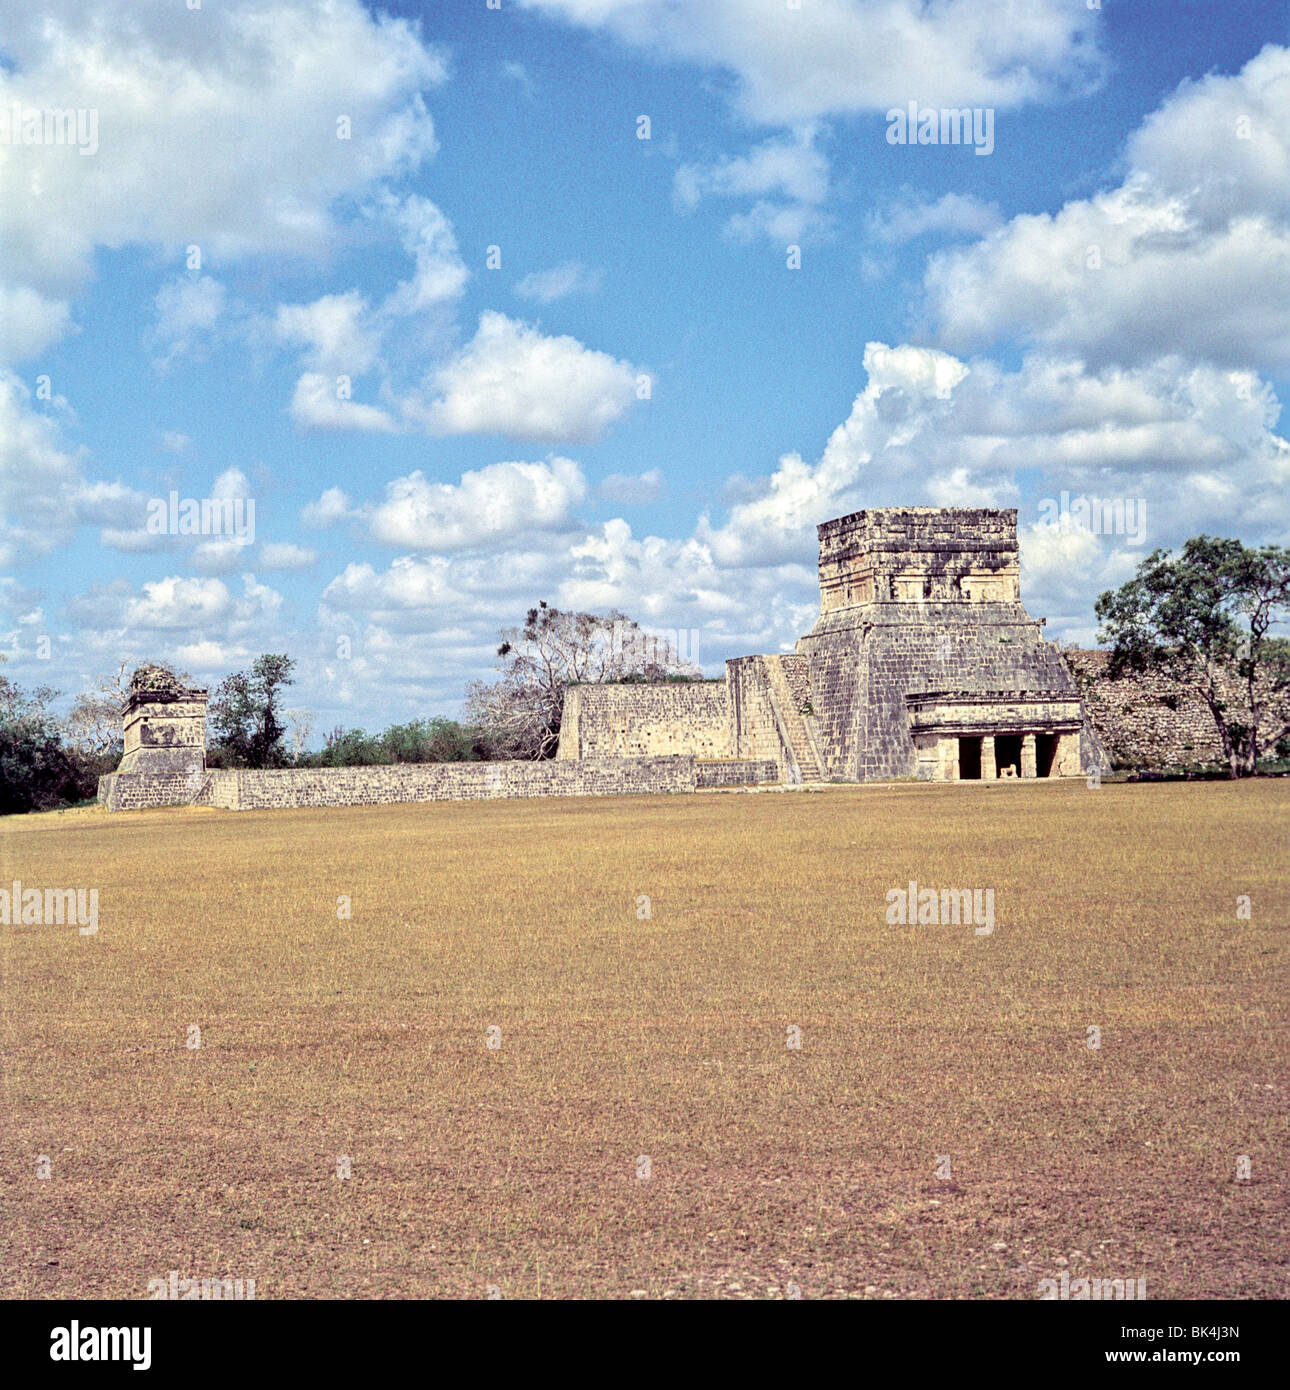 Tempel der Jaguare Chichen Itza Mexico--Treppe links führt zum Seitenanfang Wand grenzenden großen Ballspielplatz. Stockfoto